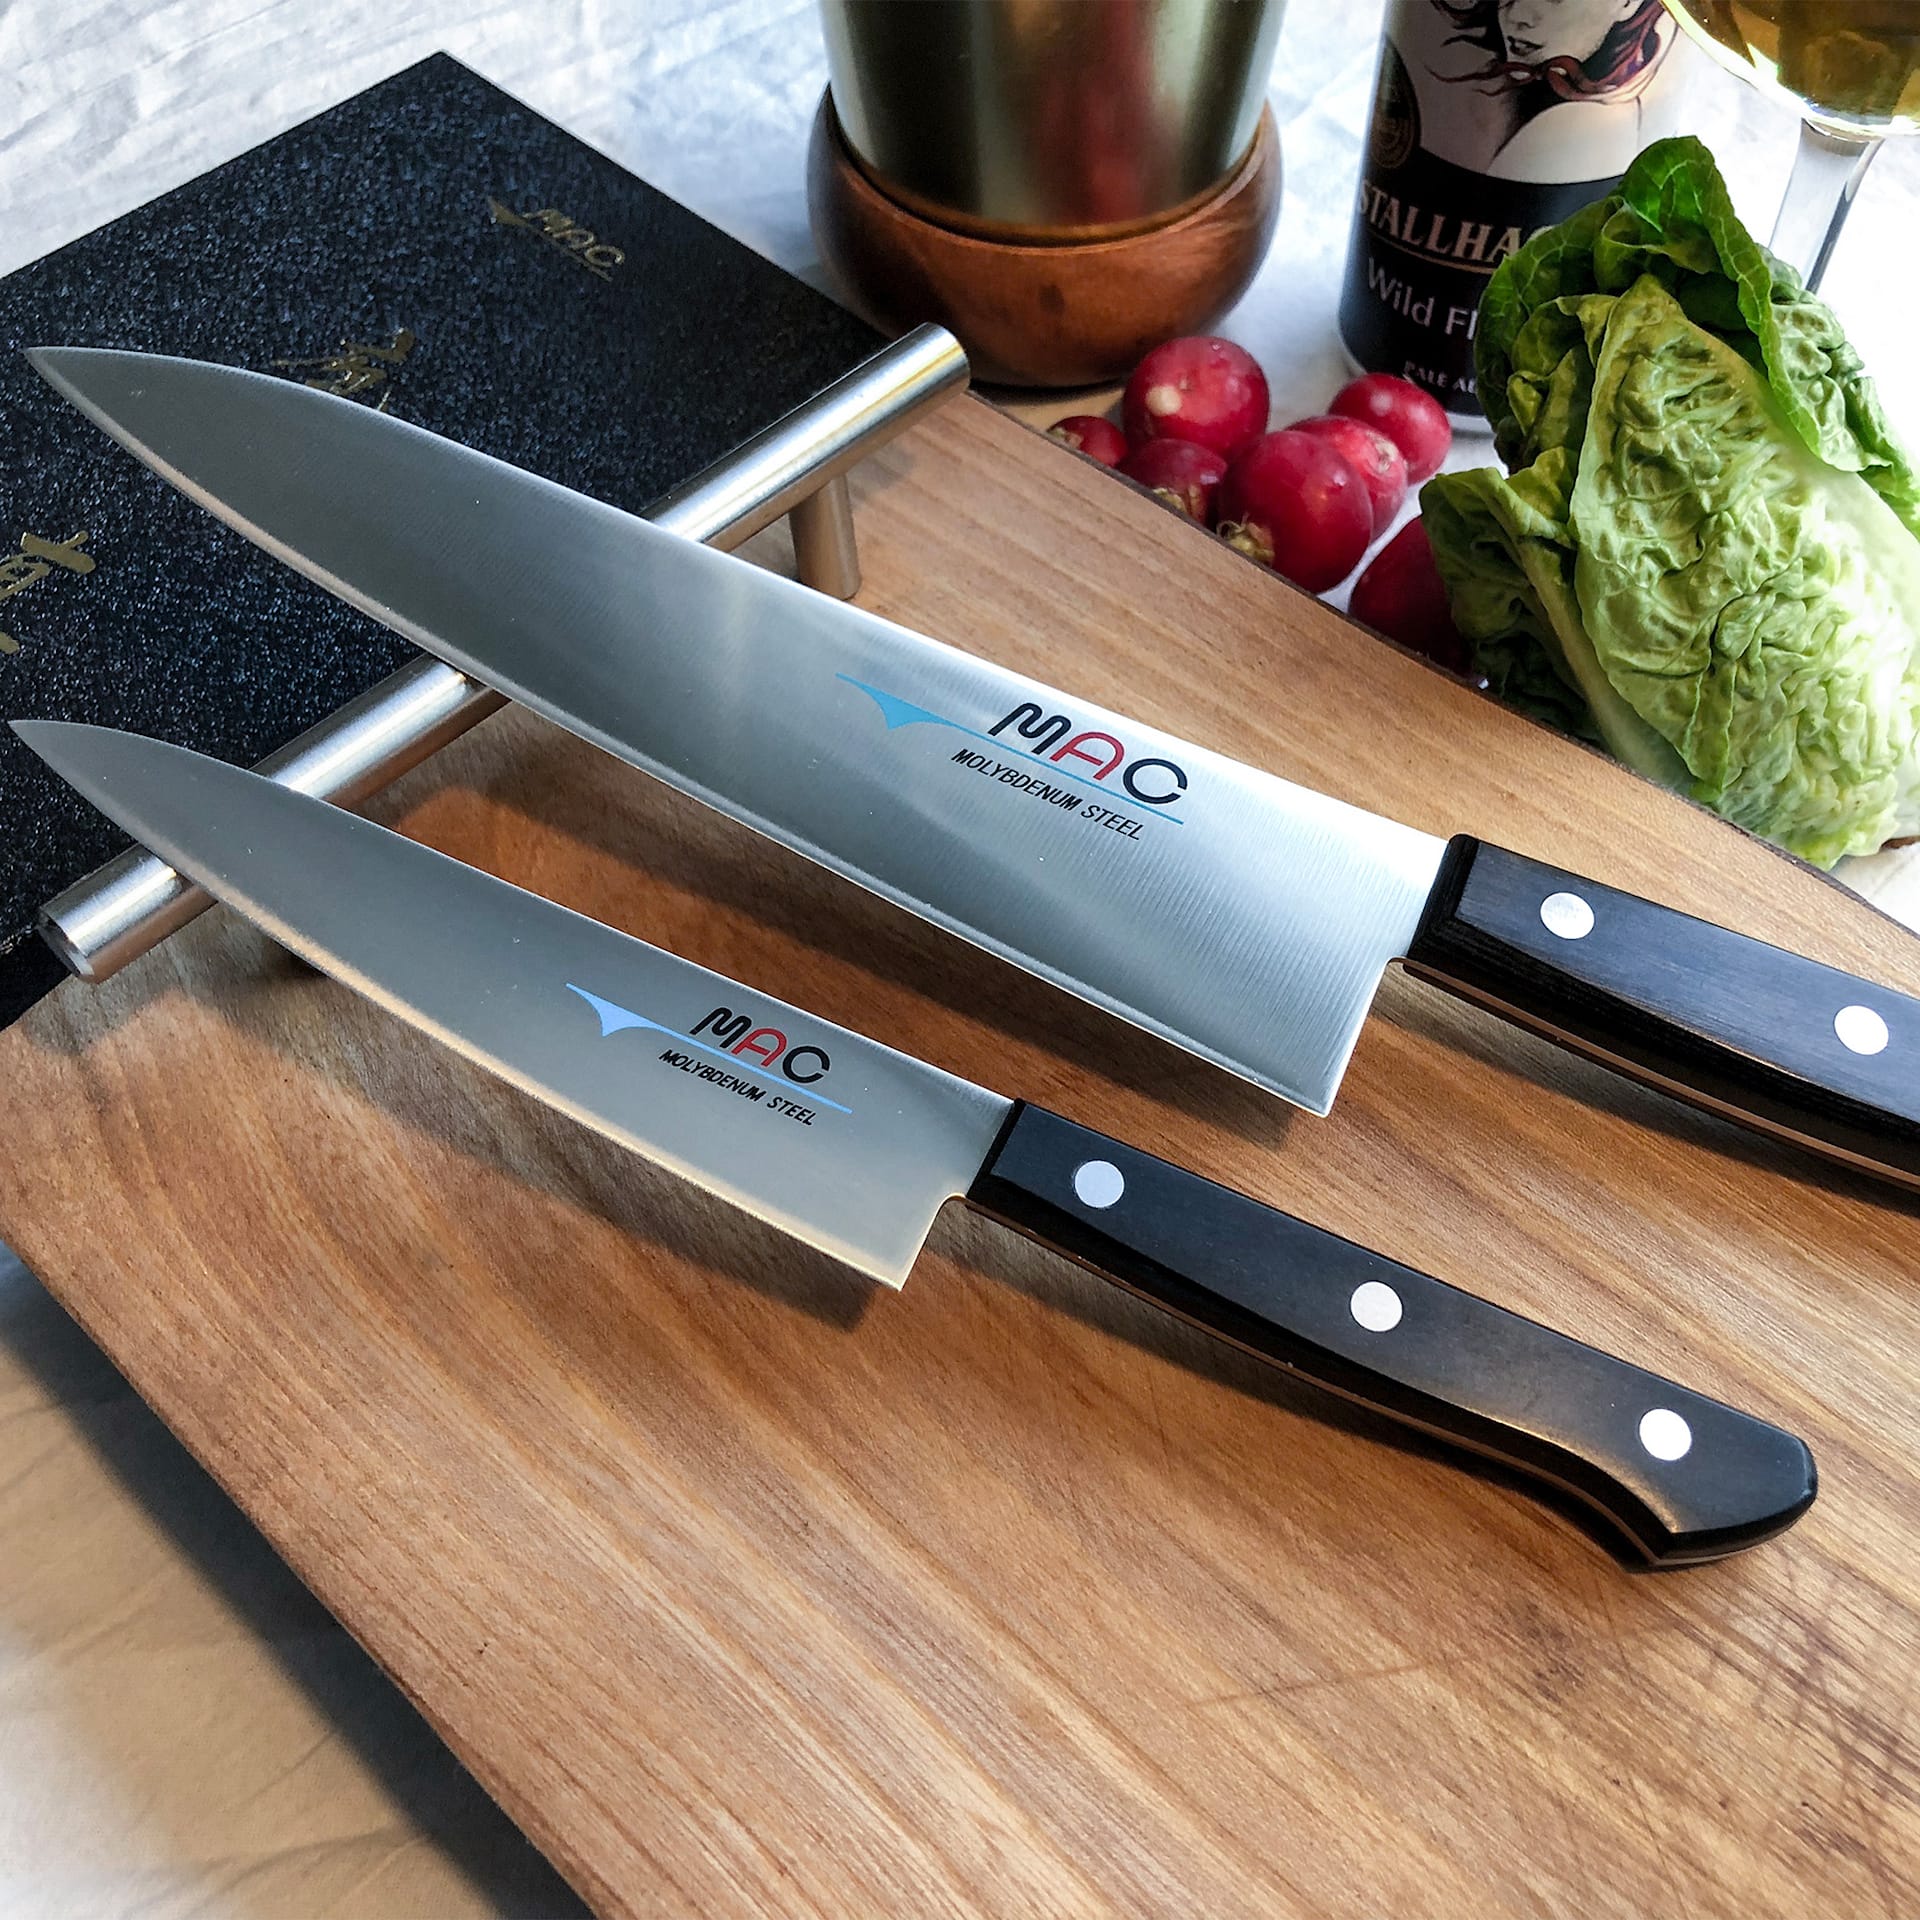 Chef - Knife set, 2 parts - MAC - NO GA